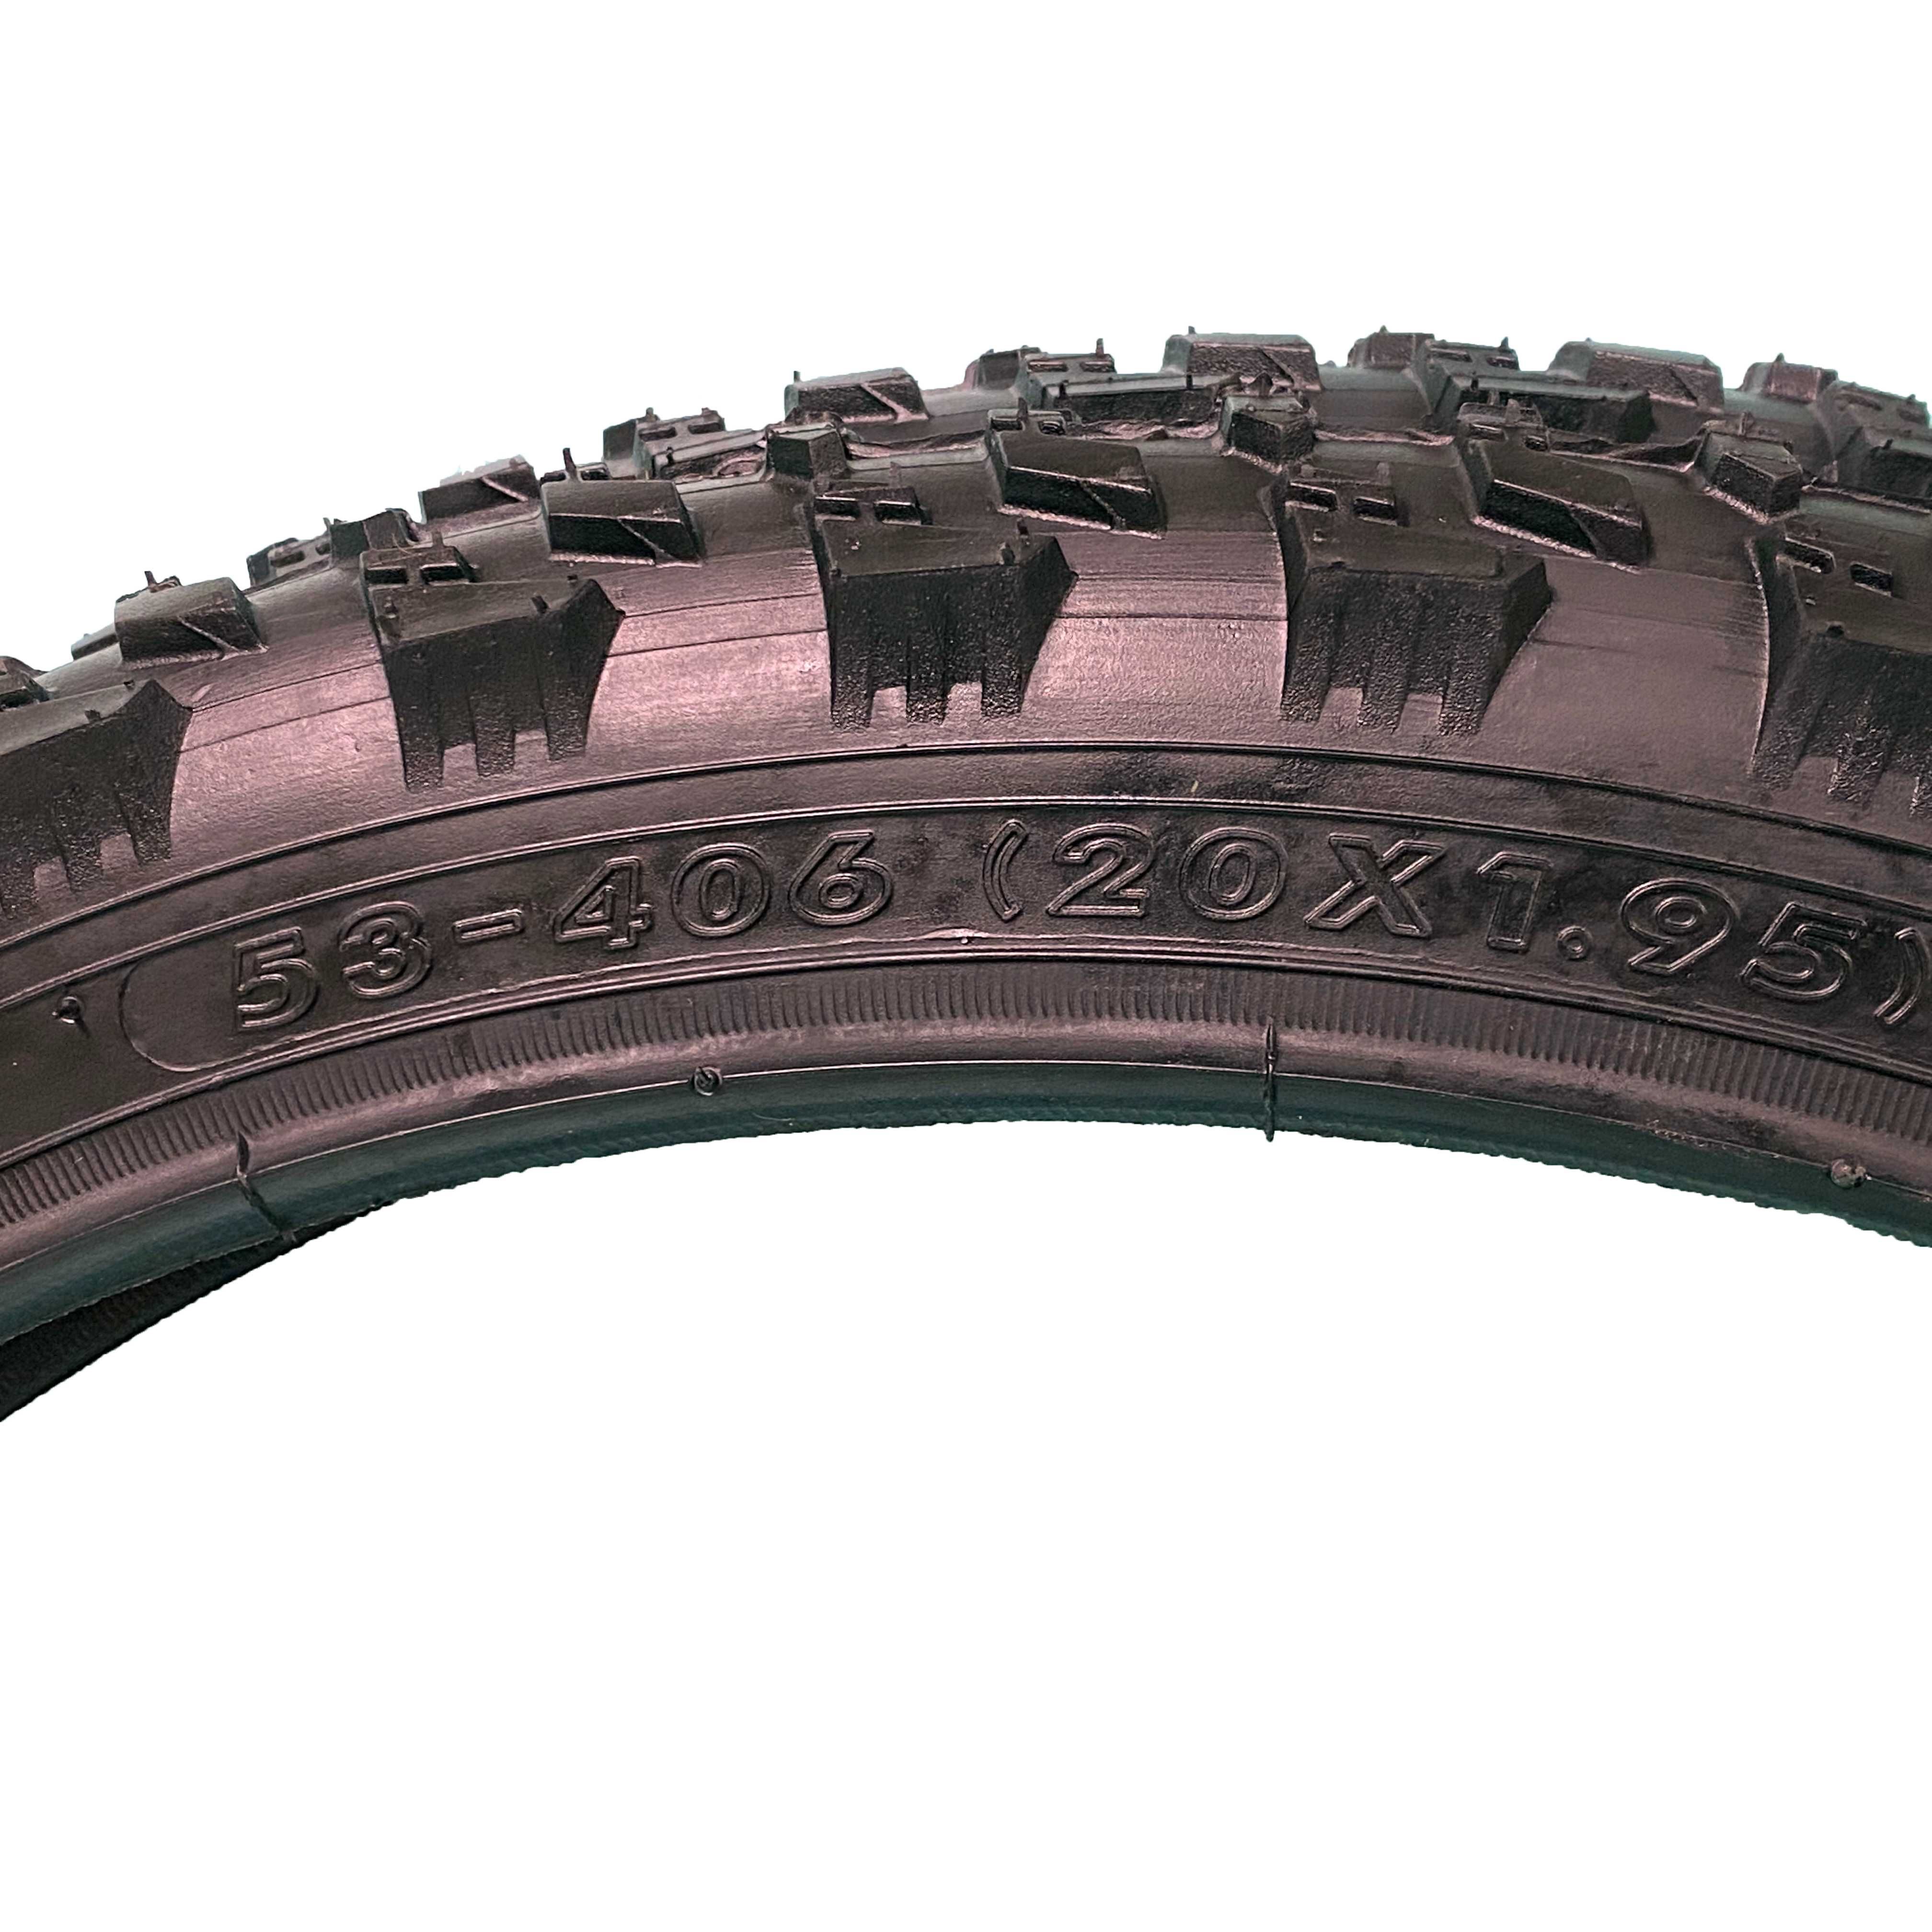 Външна гума за велосипед COMPASS (20 х 1.95) Защита от спукване - 4мм